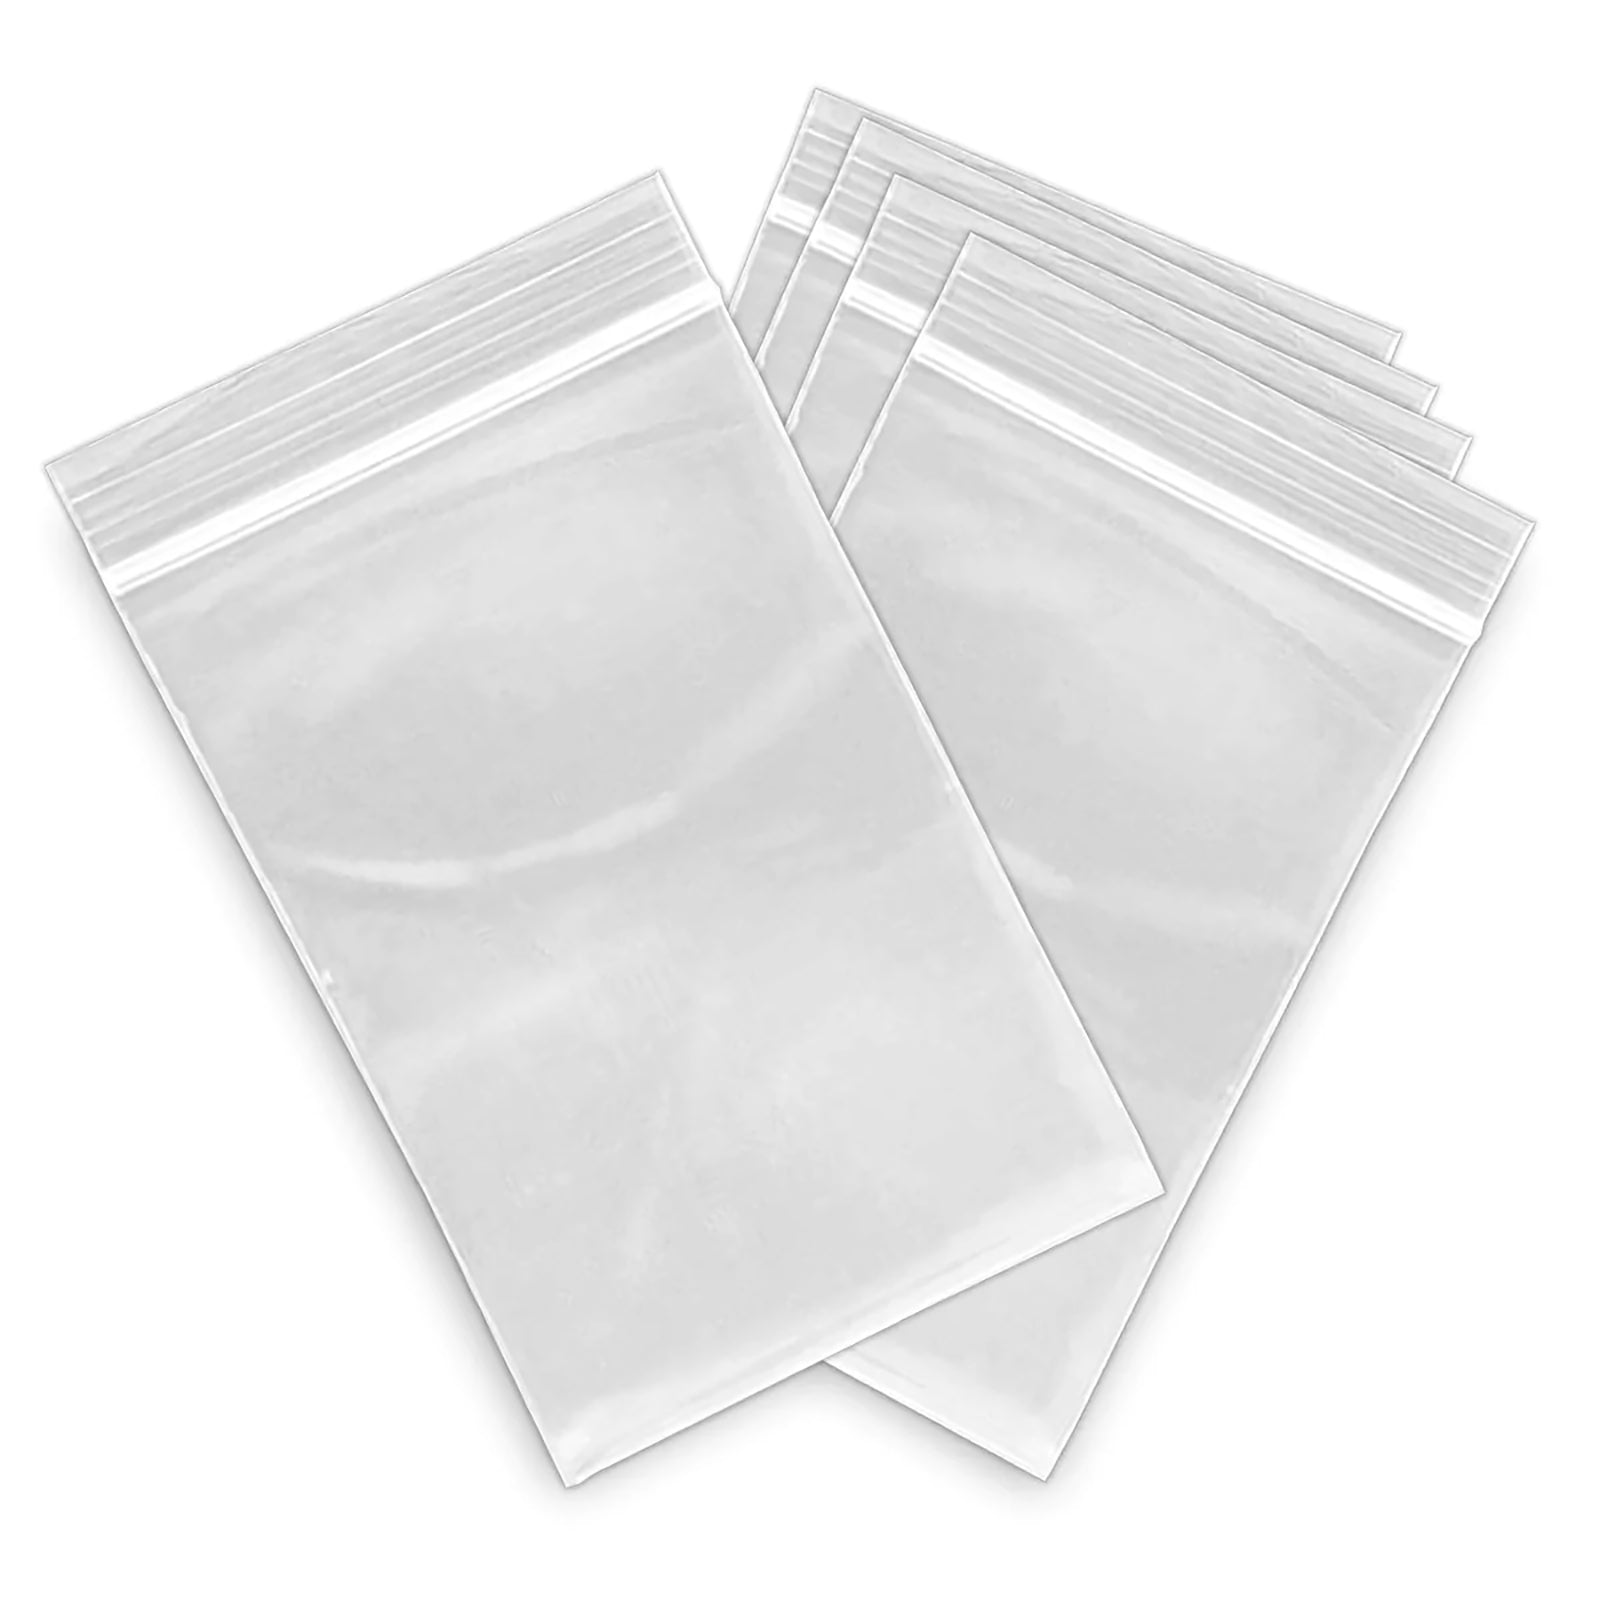 Mini Plastic bags Ziplock Bags Ziplock baggies Small Self sealing